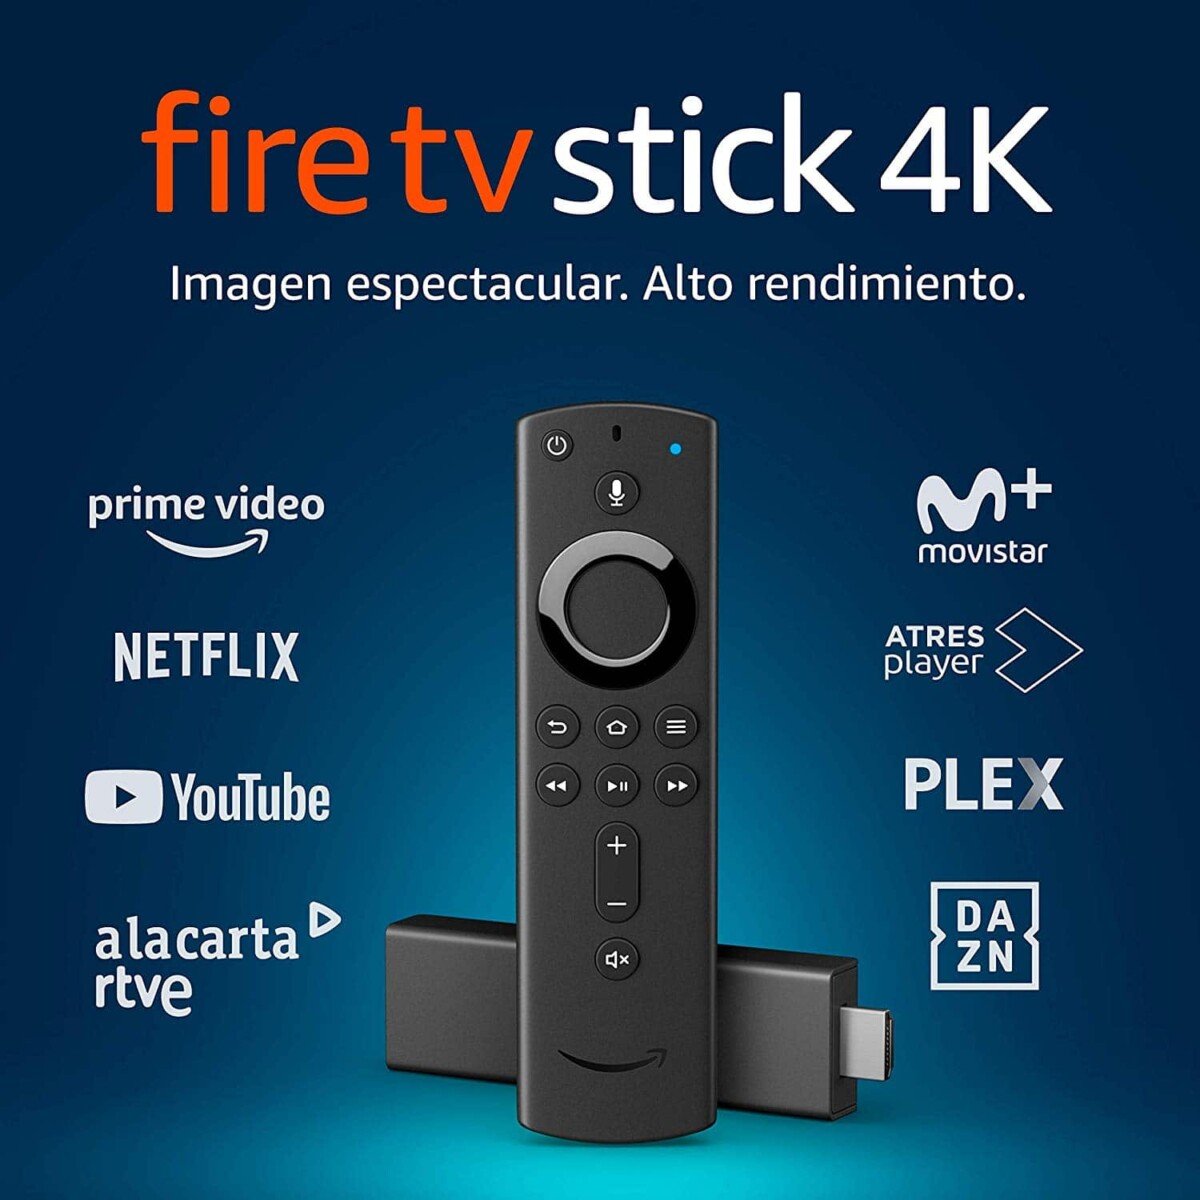 Oferta para comprar el Fire TV Stick 4K más barato. ¡Ideal para tu hotel!